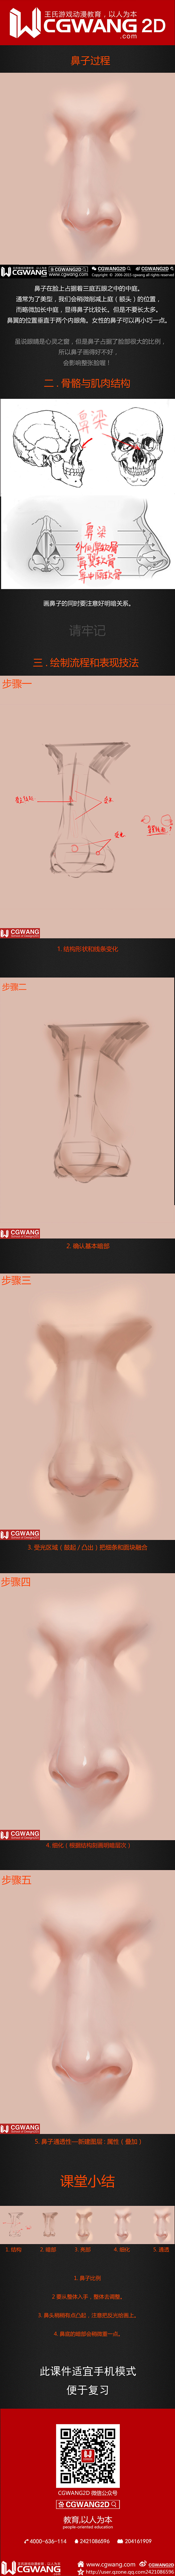 【CGWANG2D】每日教程《五官系列-...